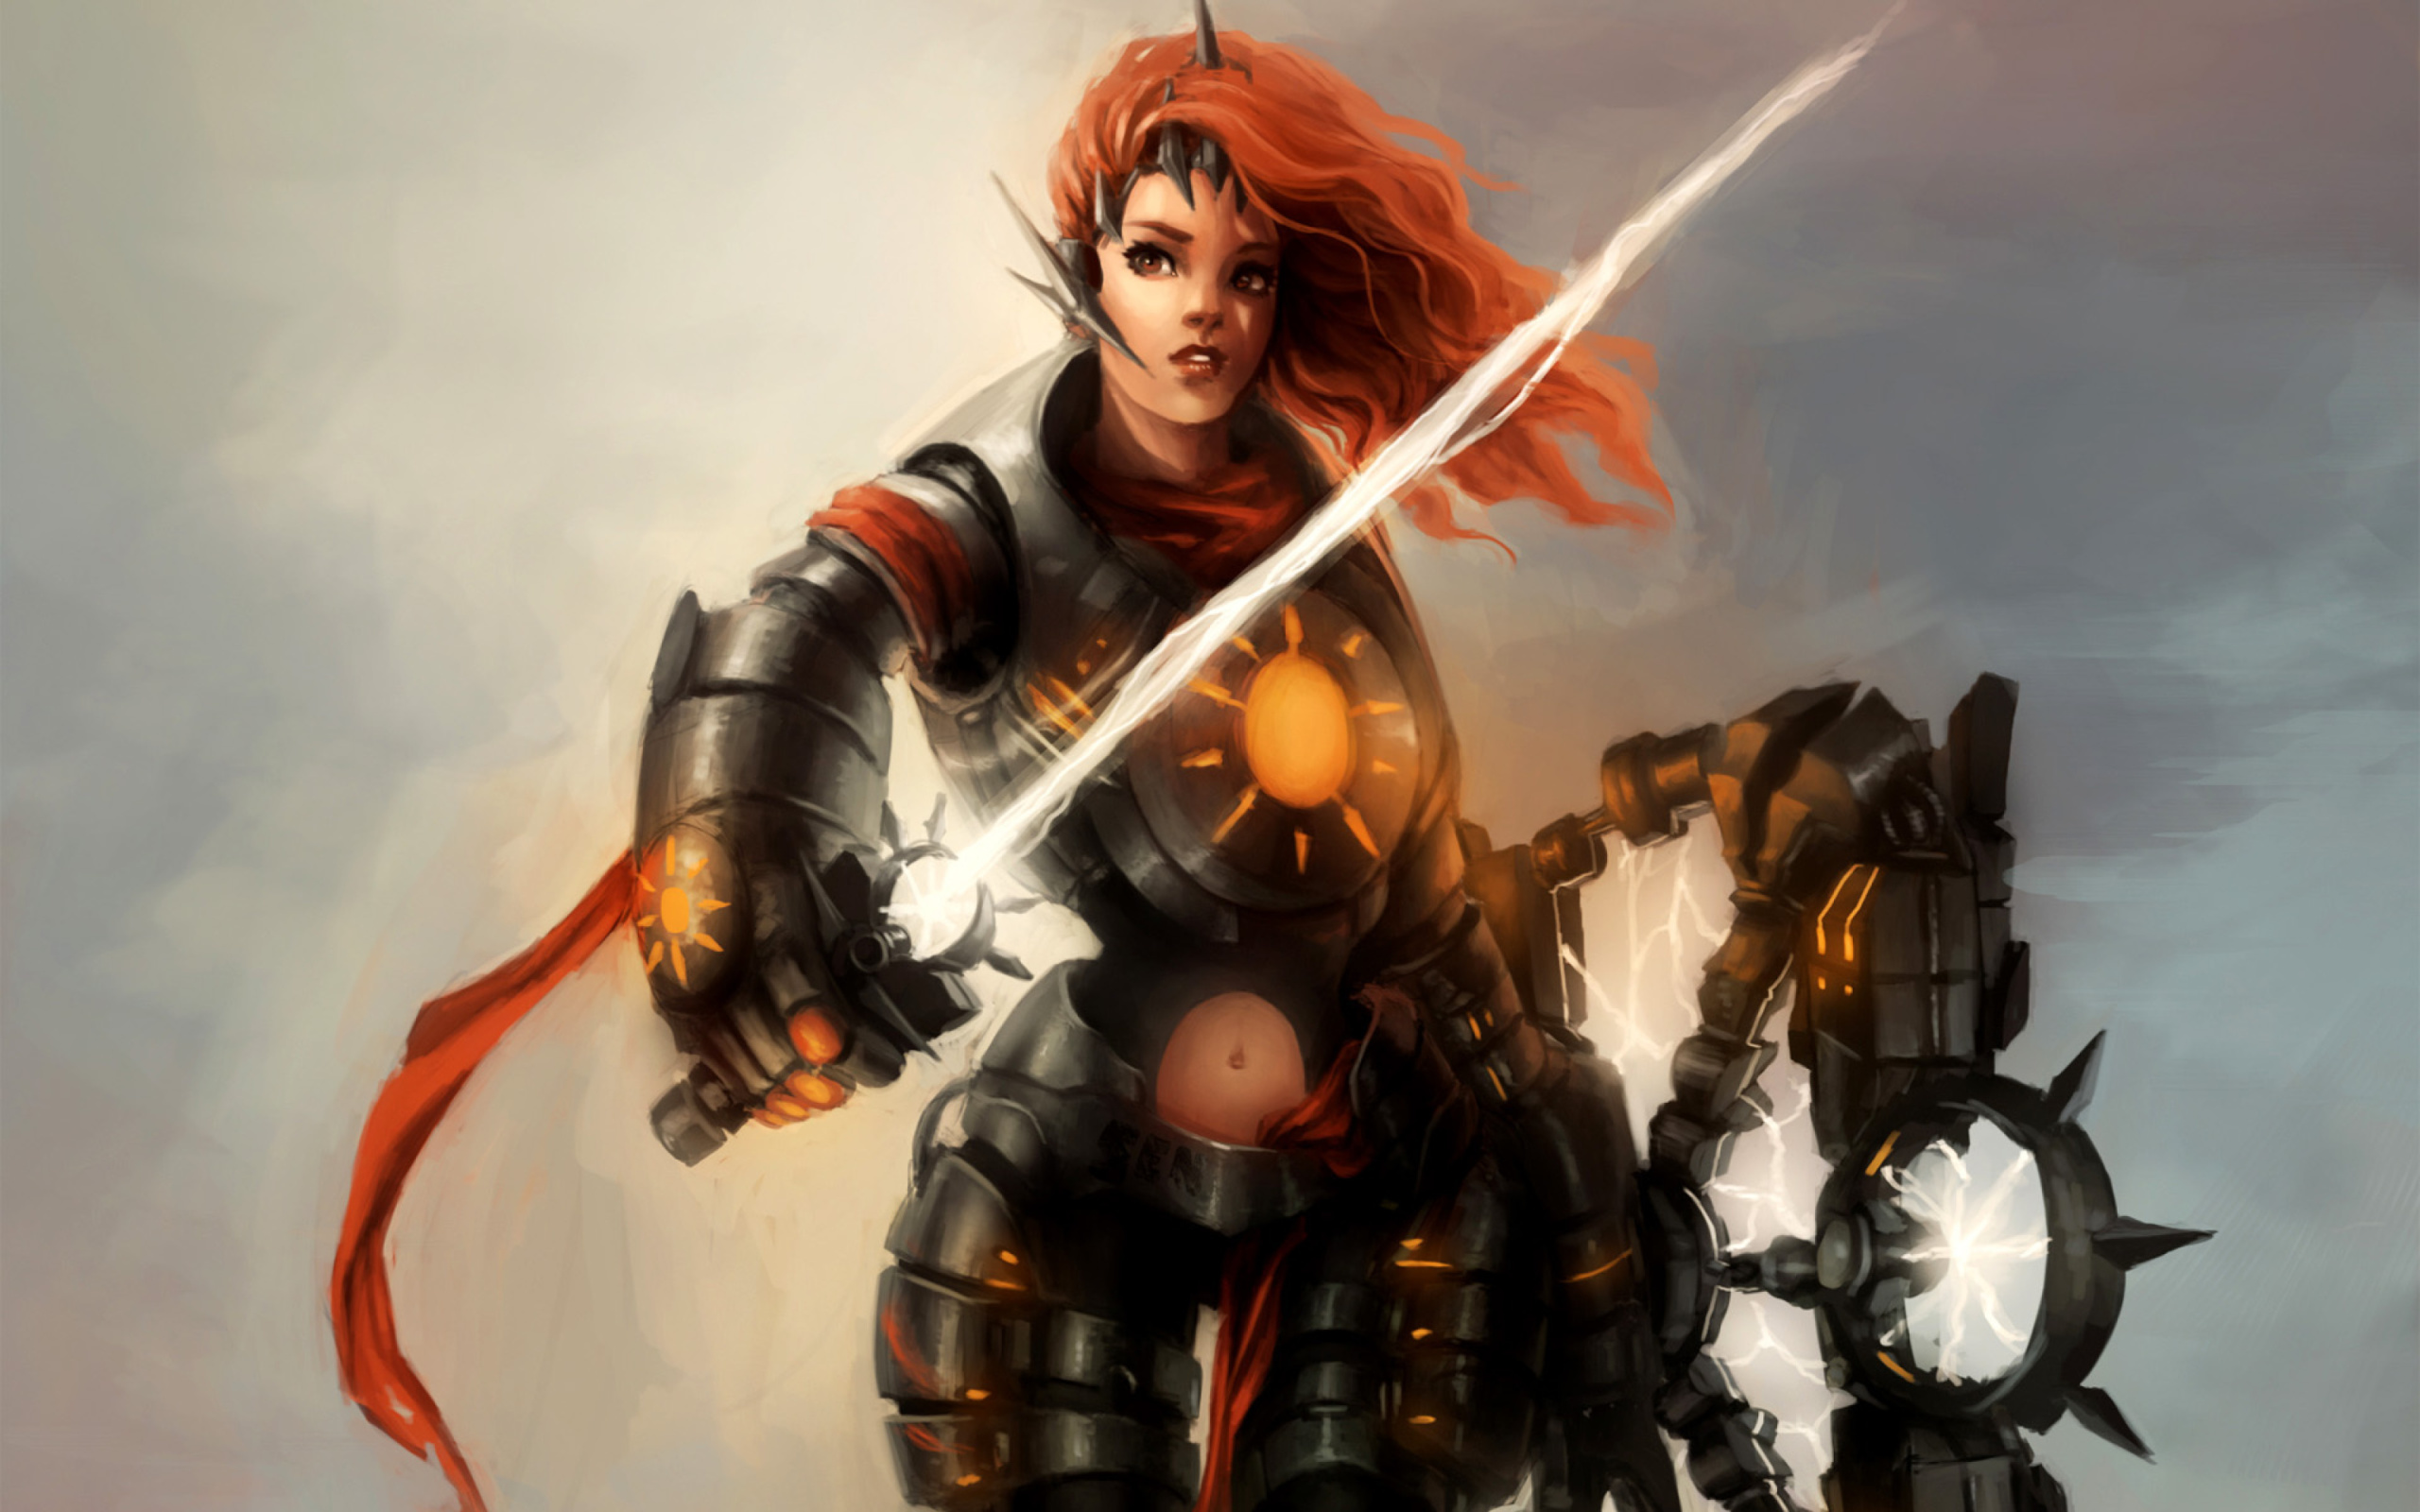 Sfondi Warrior  Woman with Sword 2560x1600